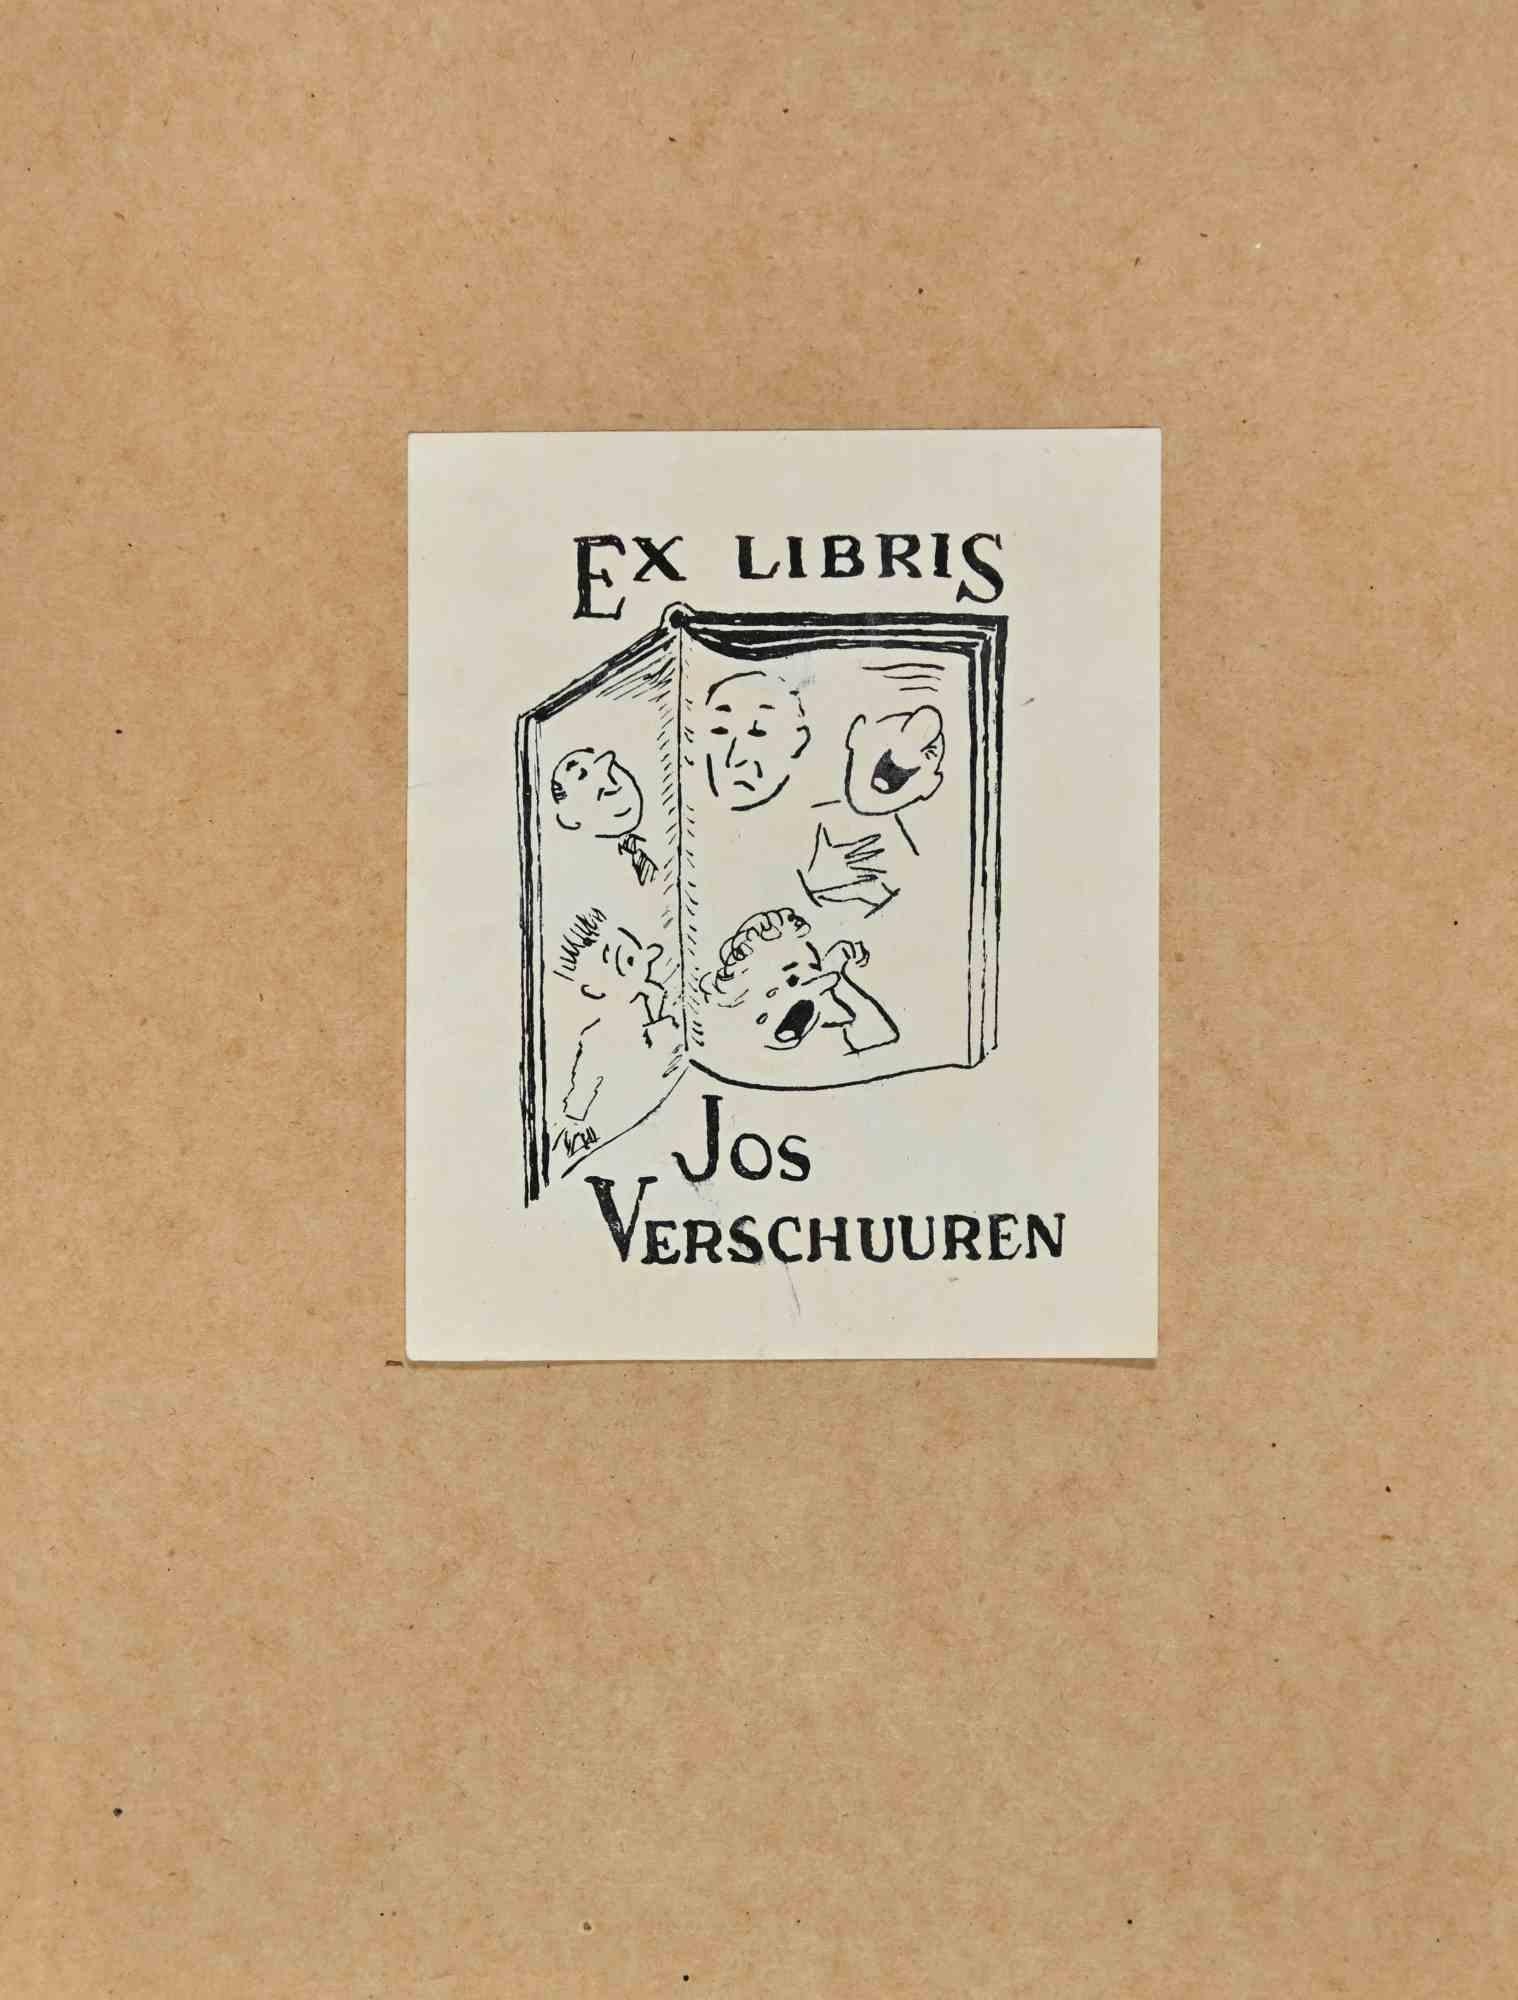  Ex Libris - Jos Verschuuren - Mitte des 20. Jahrhunderts